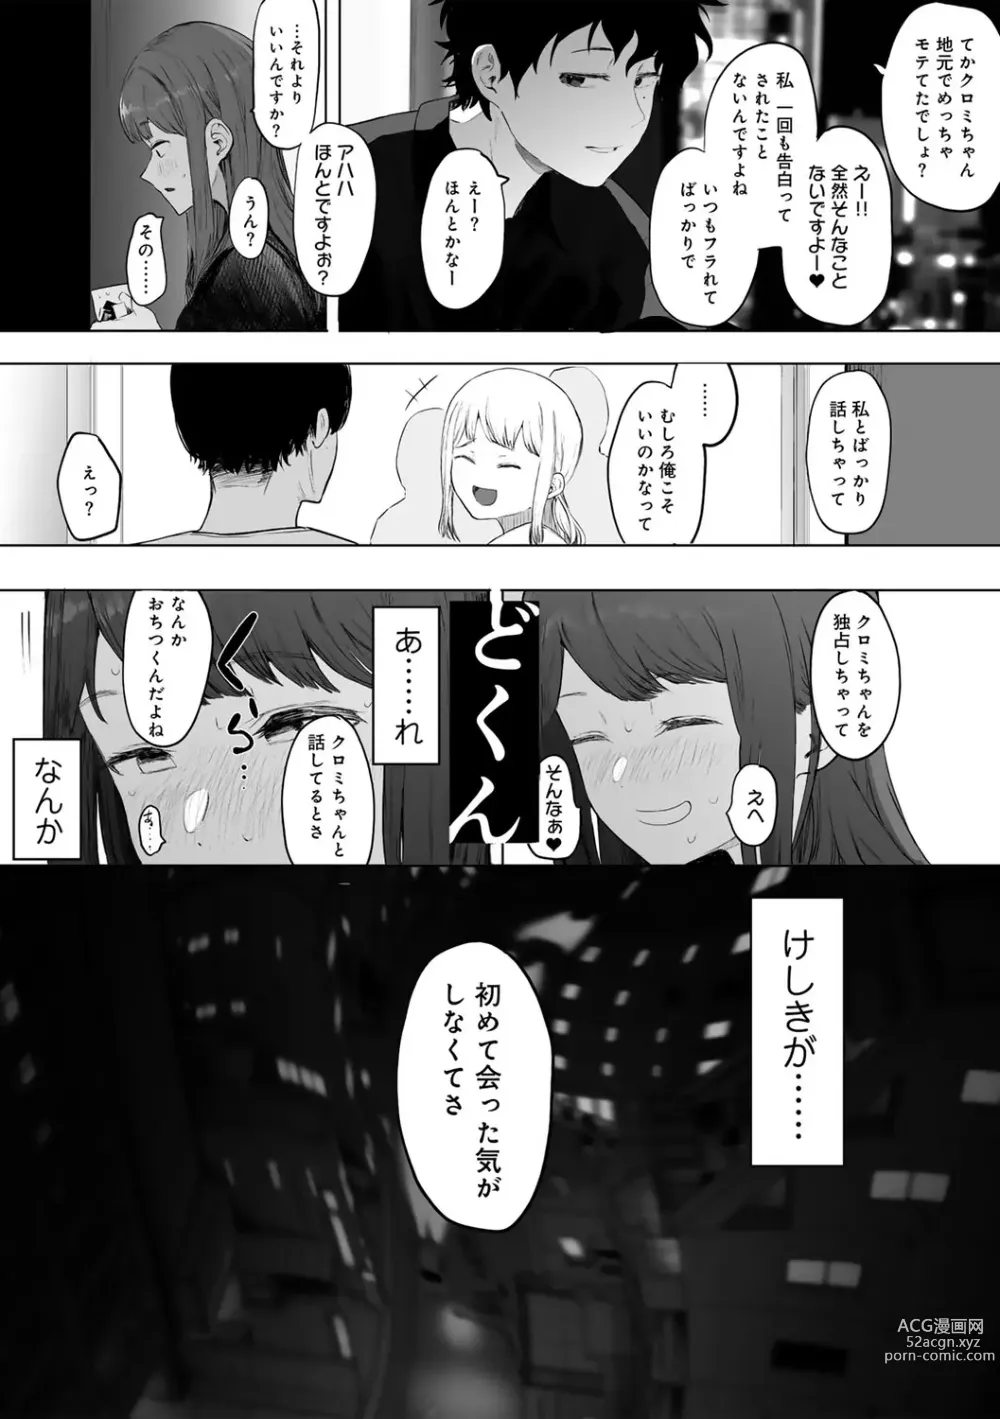 Page 9 of manga COMIC kisshug vol.3